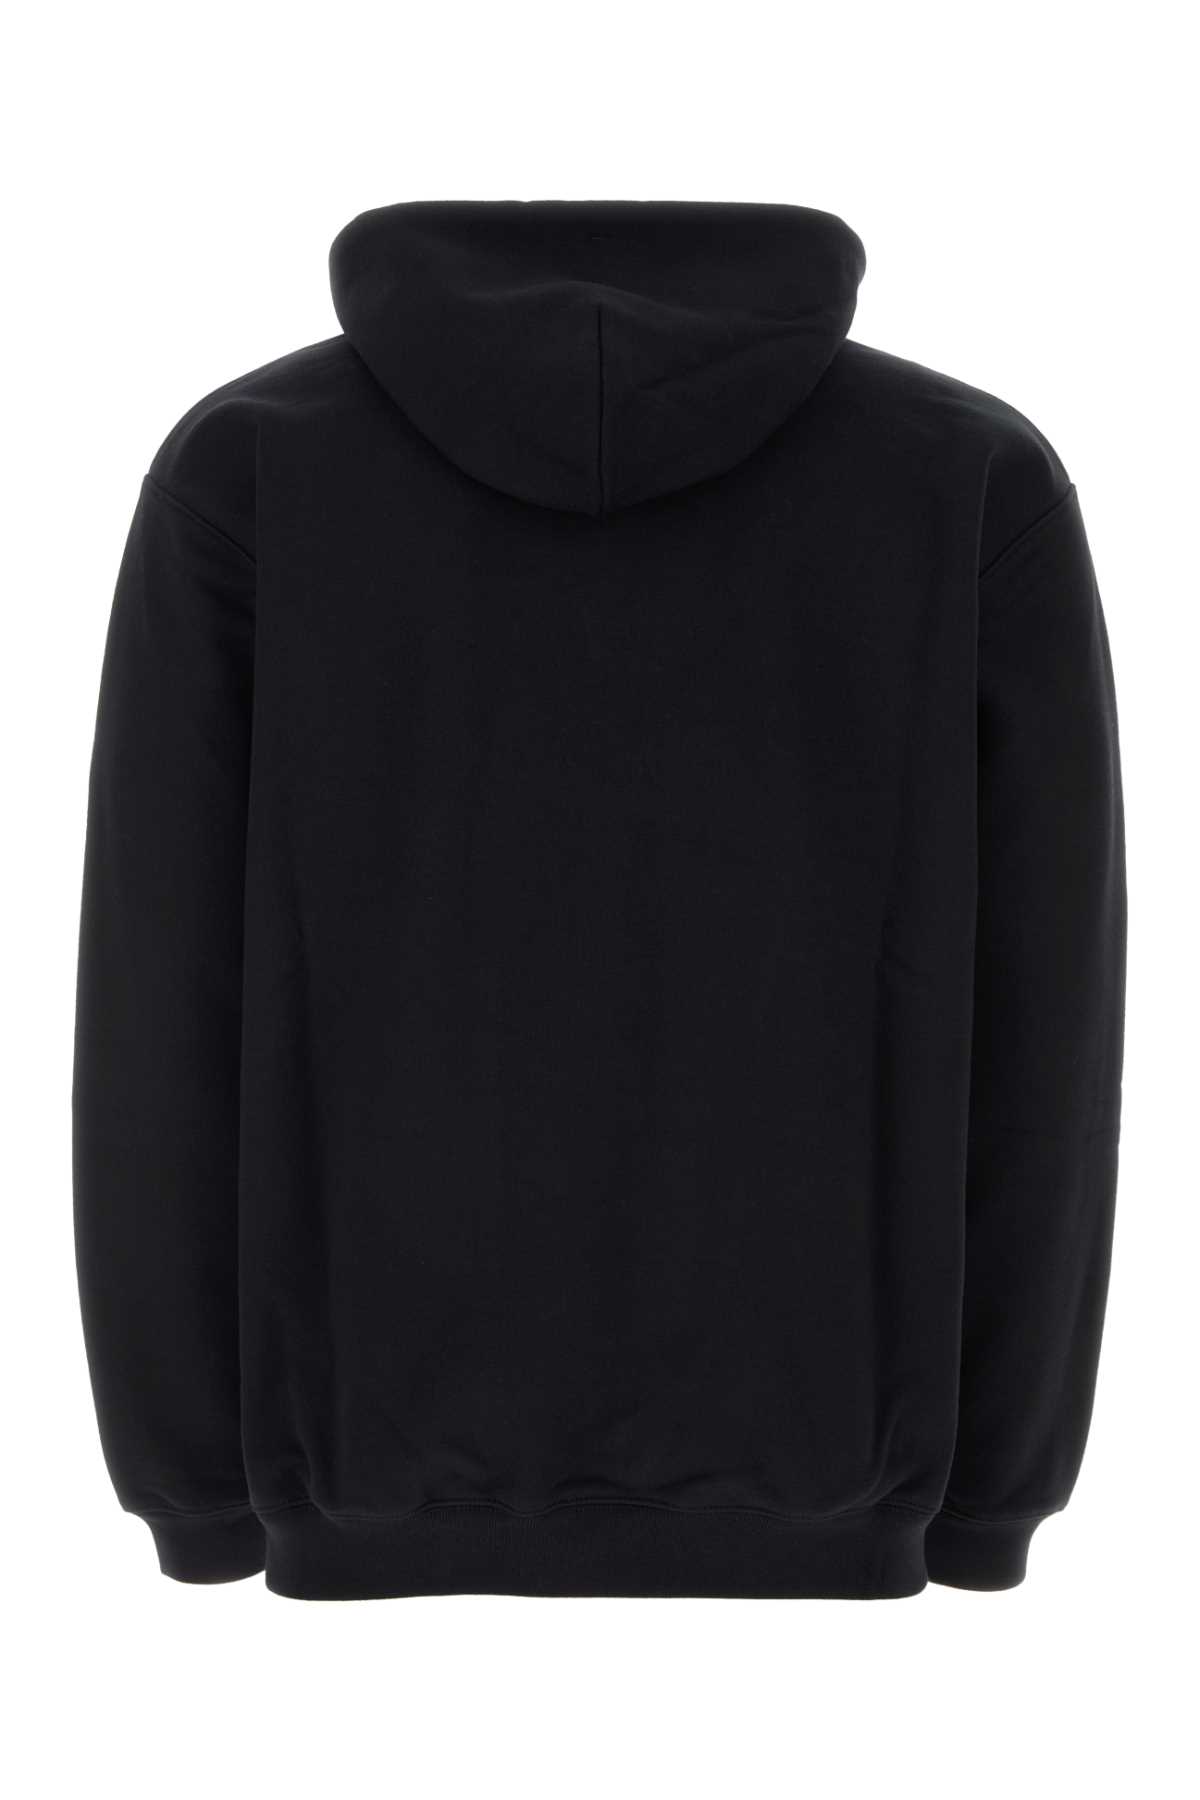 Shop Vtmnts Black Cotton Blend Sweatshirt